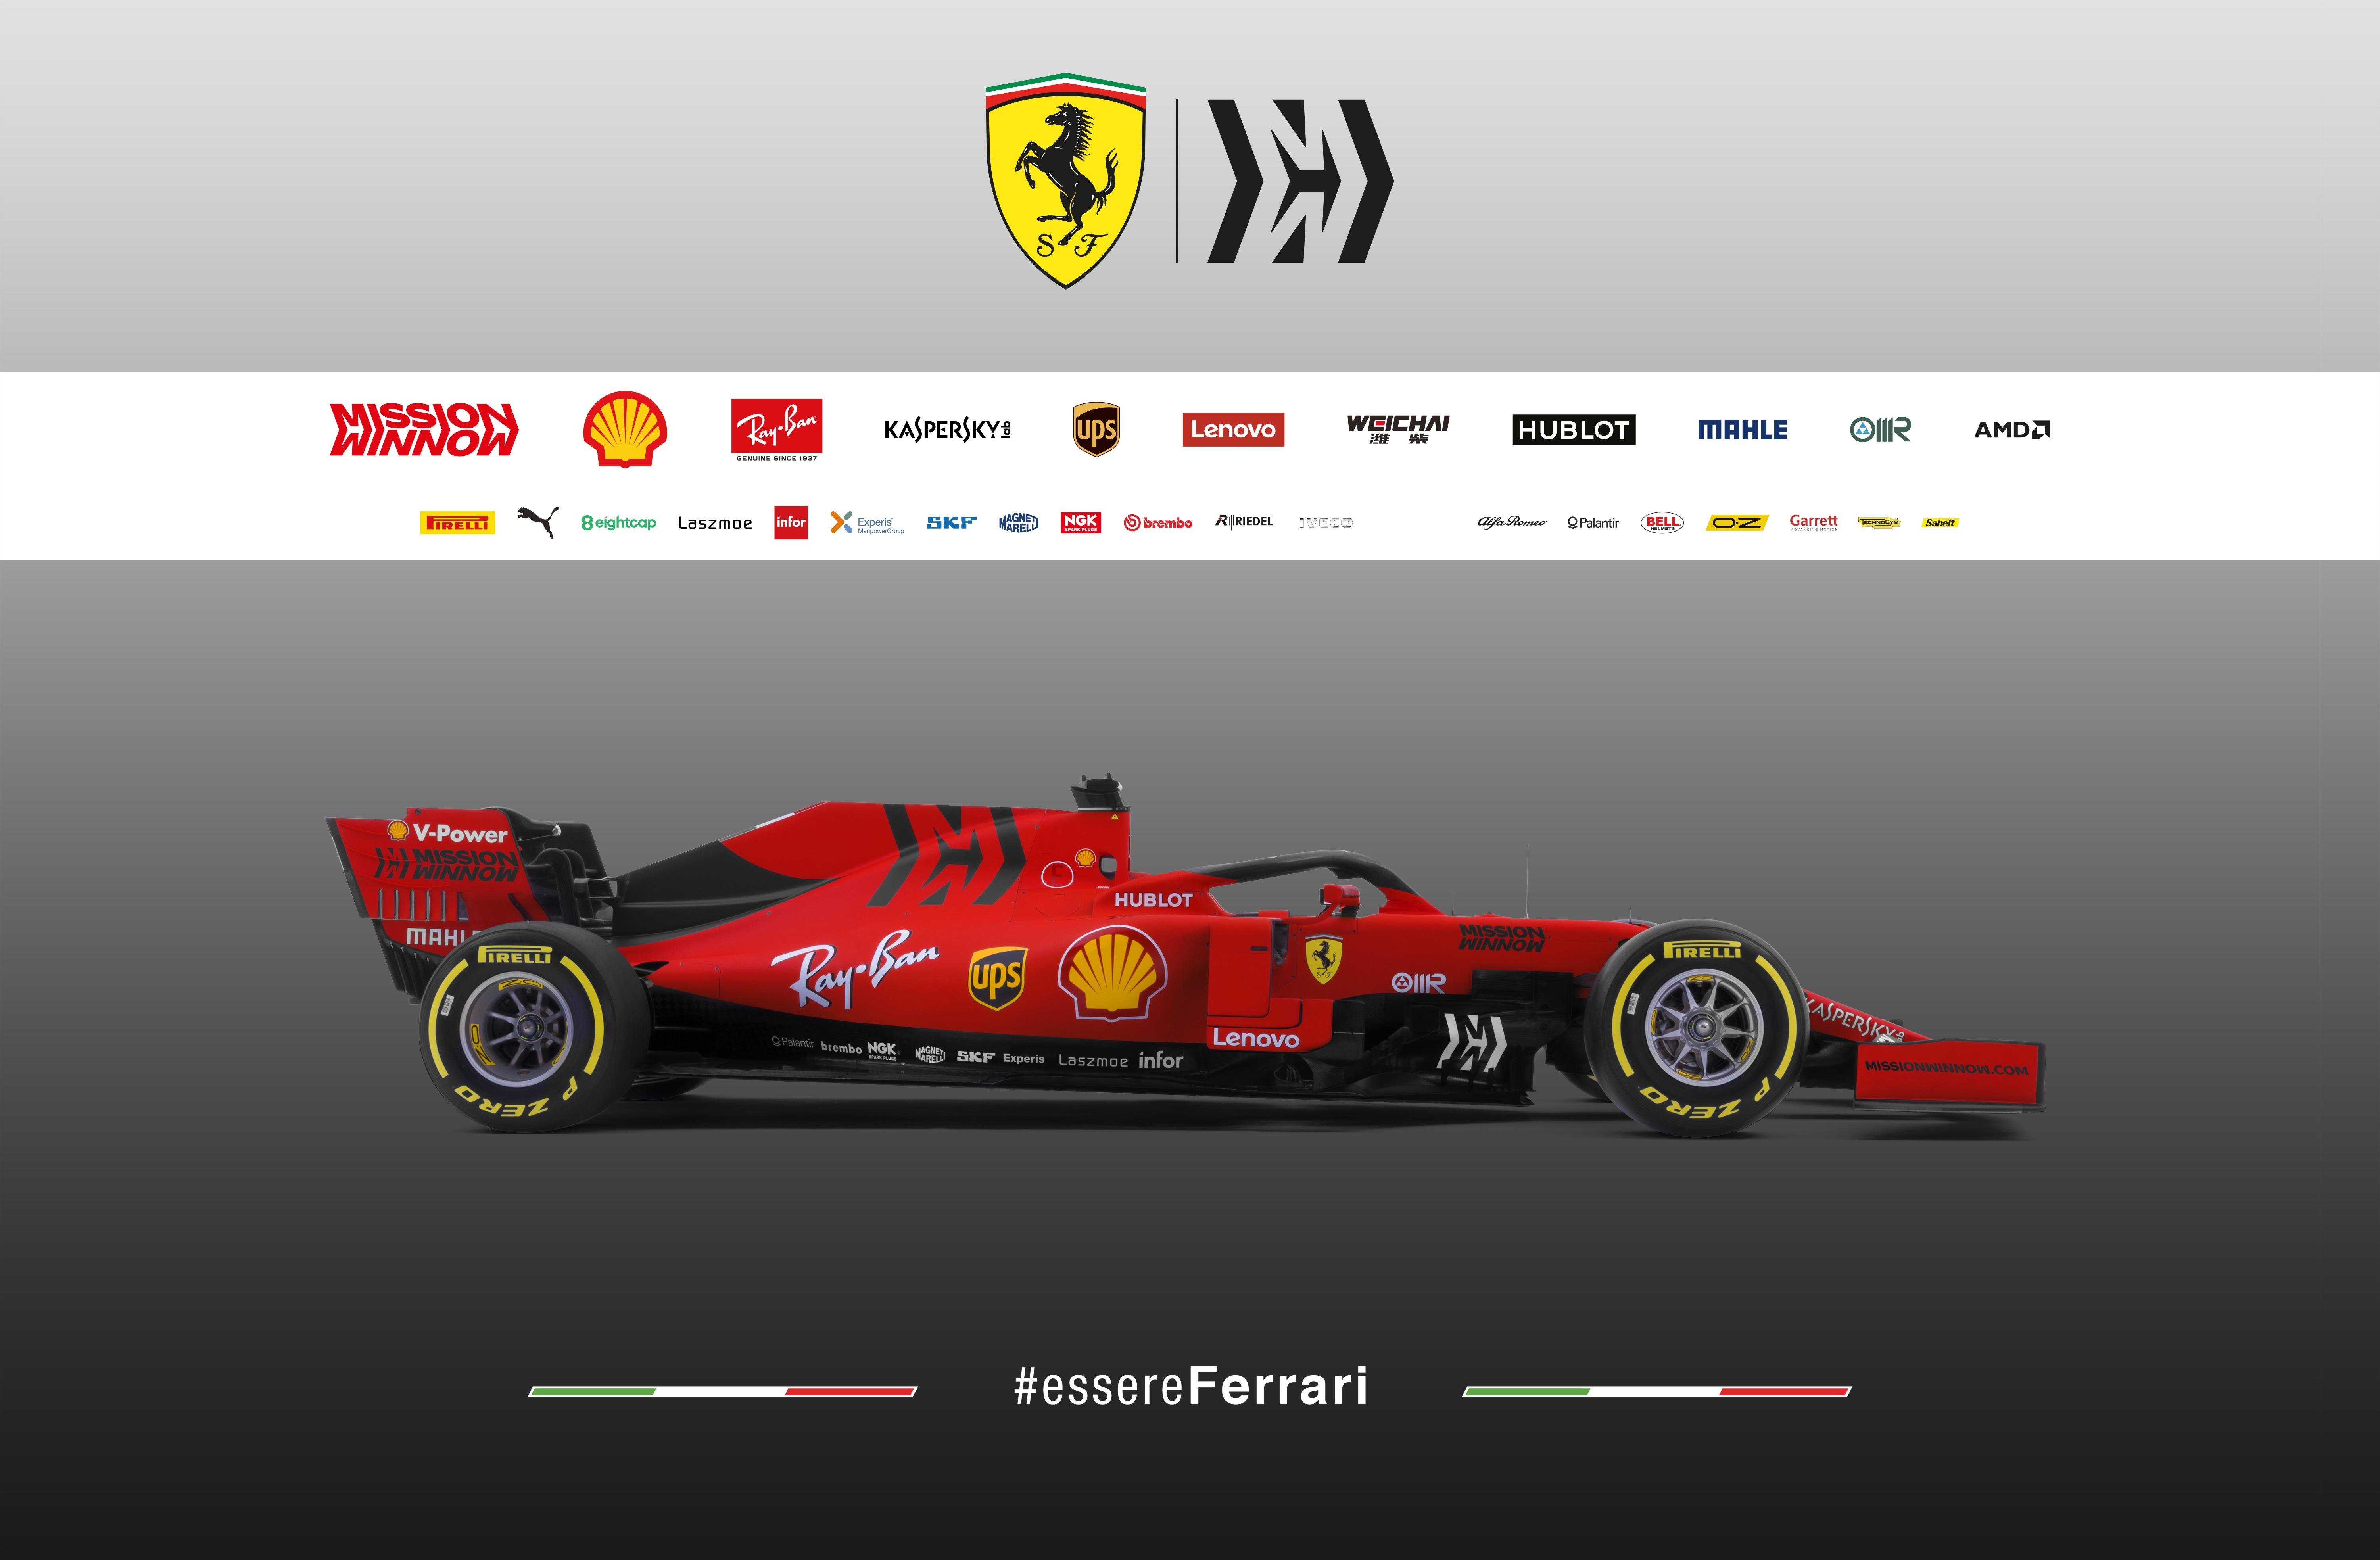 Ferrari SF90 F1 car launch picture